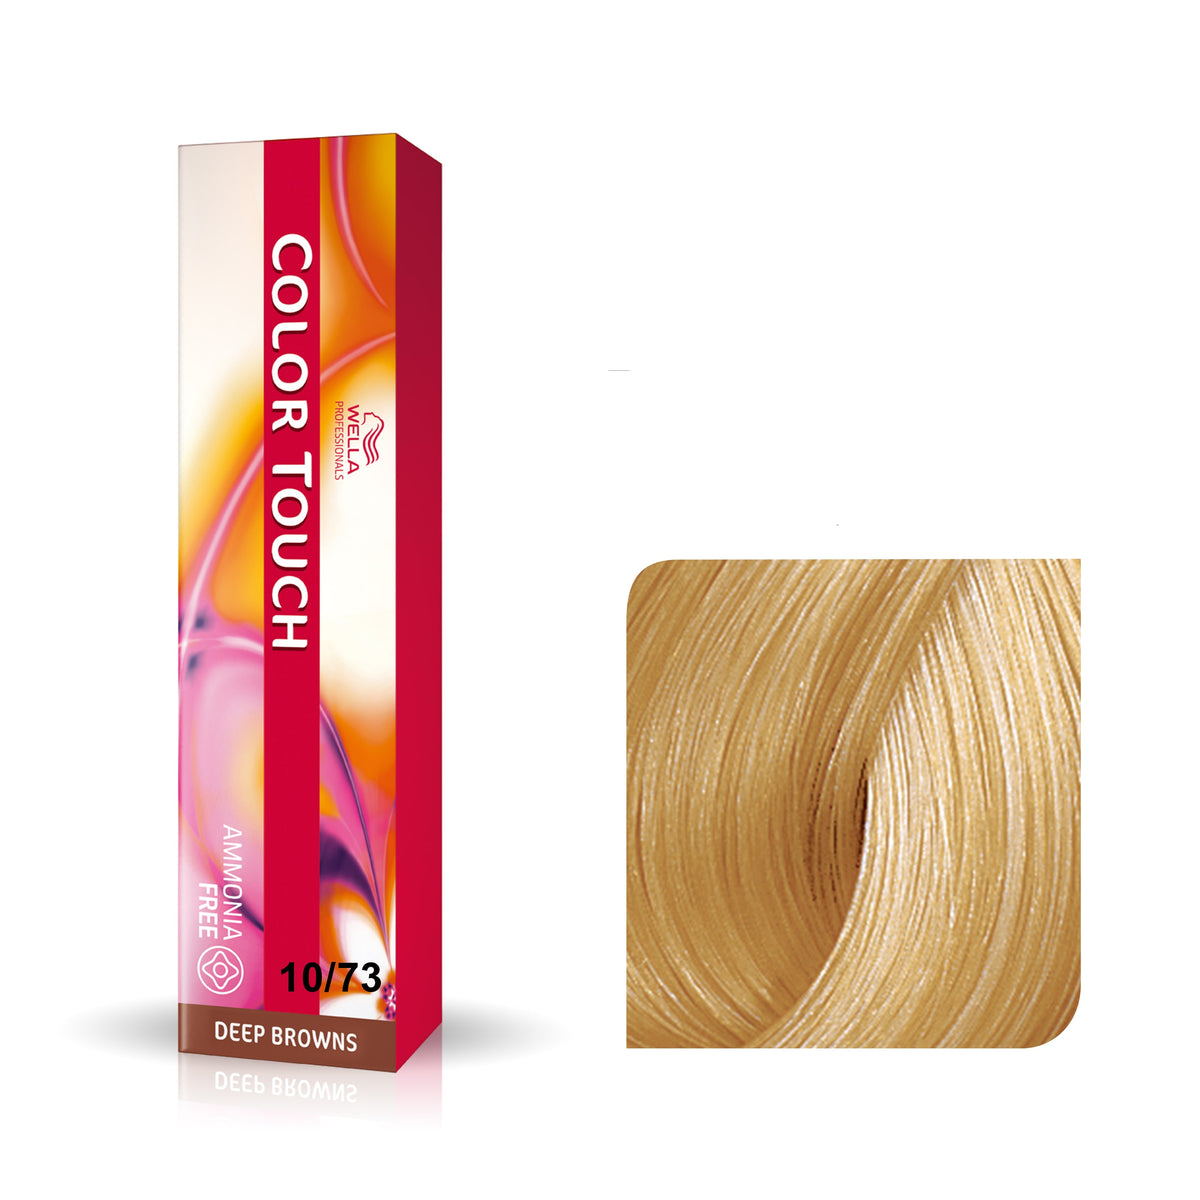 a box of color hair dye next to a box of hair dye